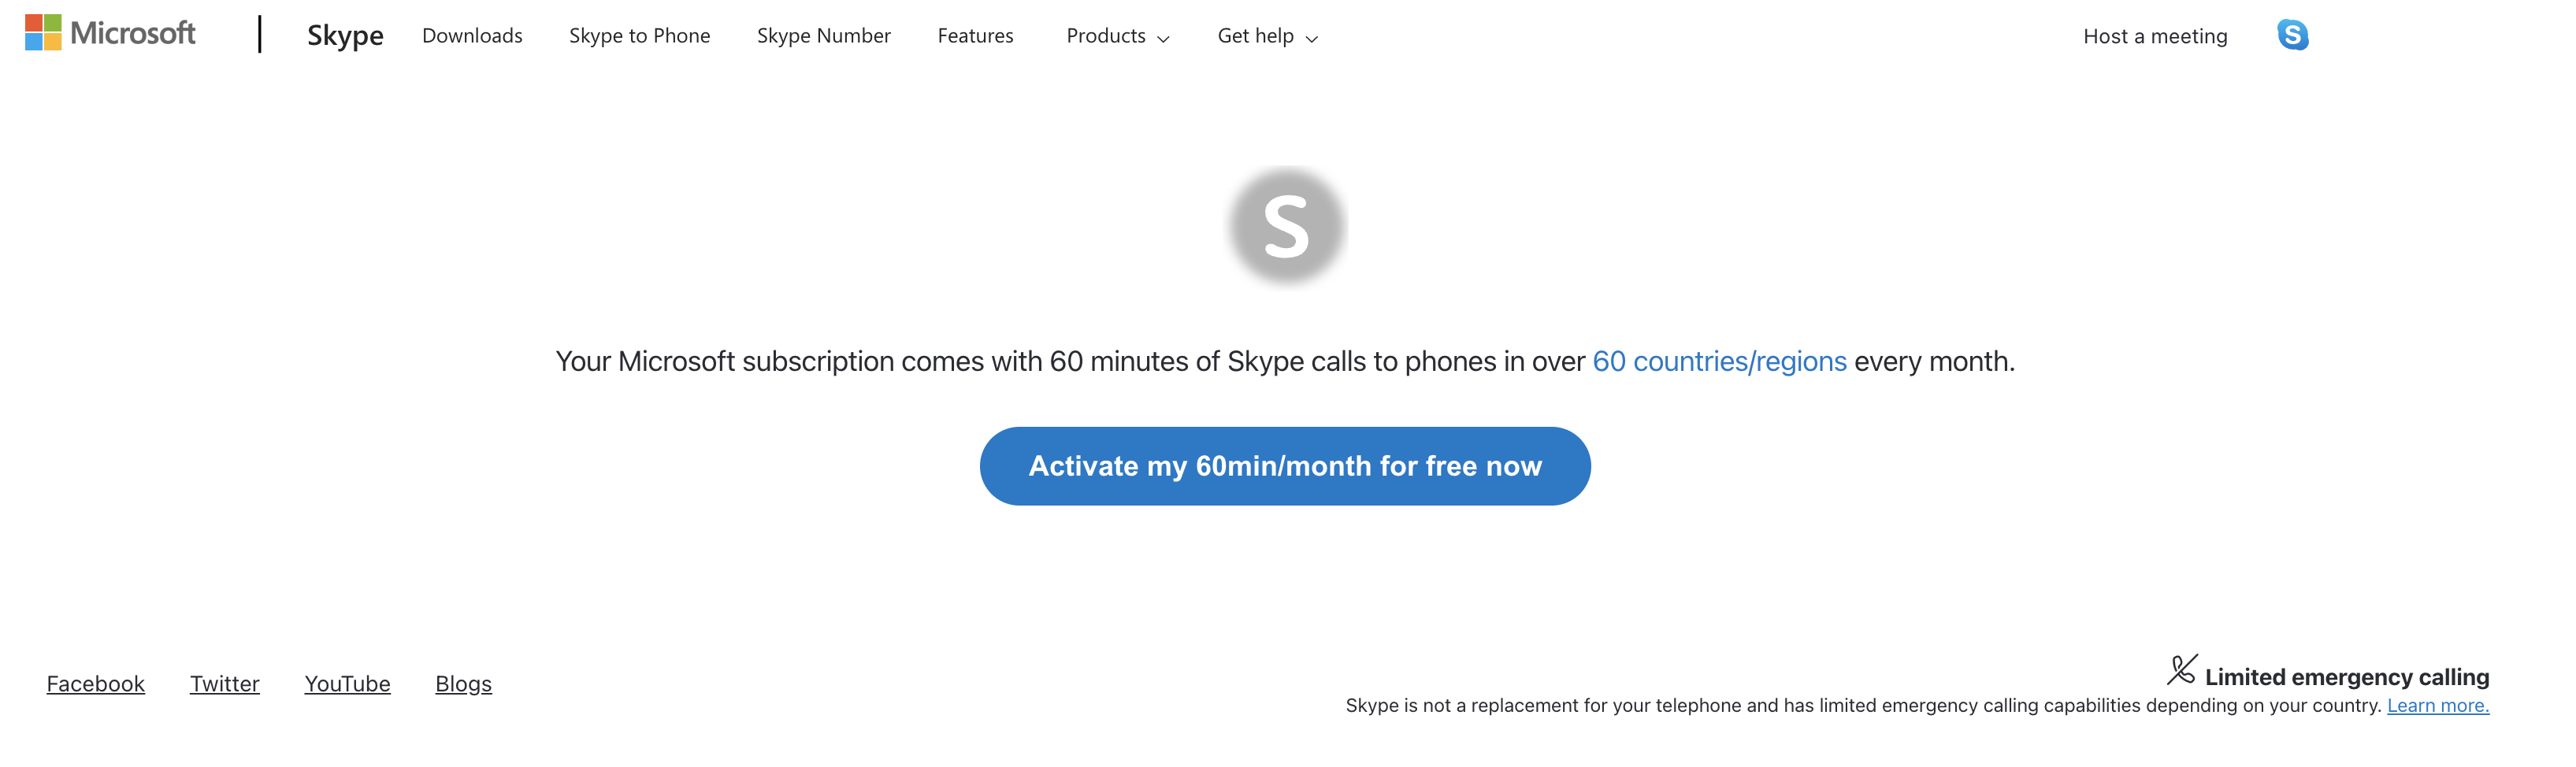 Nettside for å aktivere gratis 60 minutter med Skype